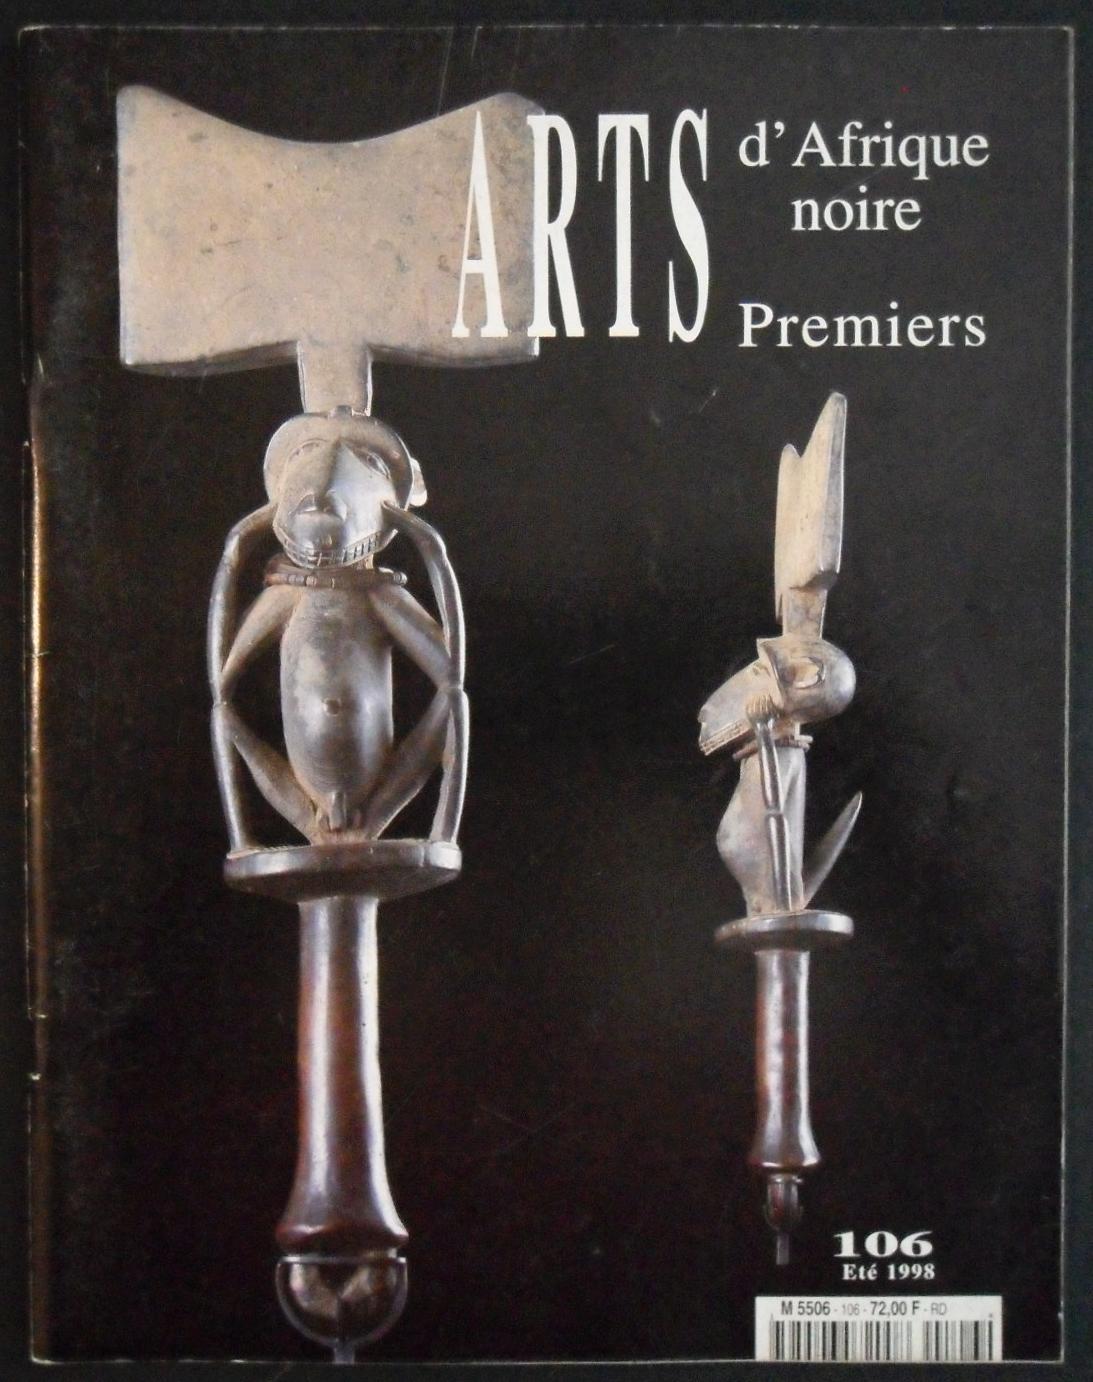 ARTS D'AFRIQUE NOIRE - Arts Premiers - 106 - Eté 1998 by Raoul Lehuard ...